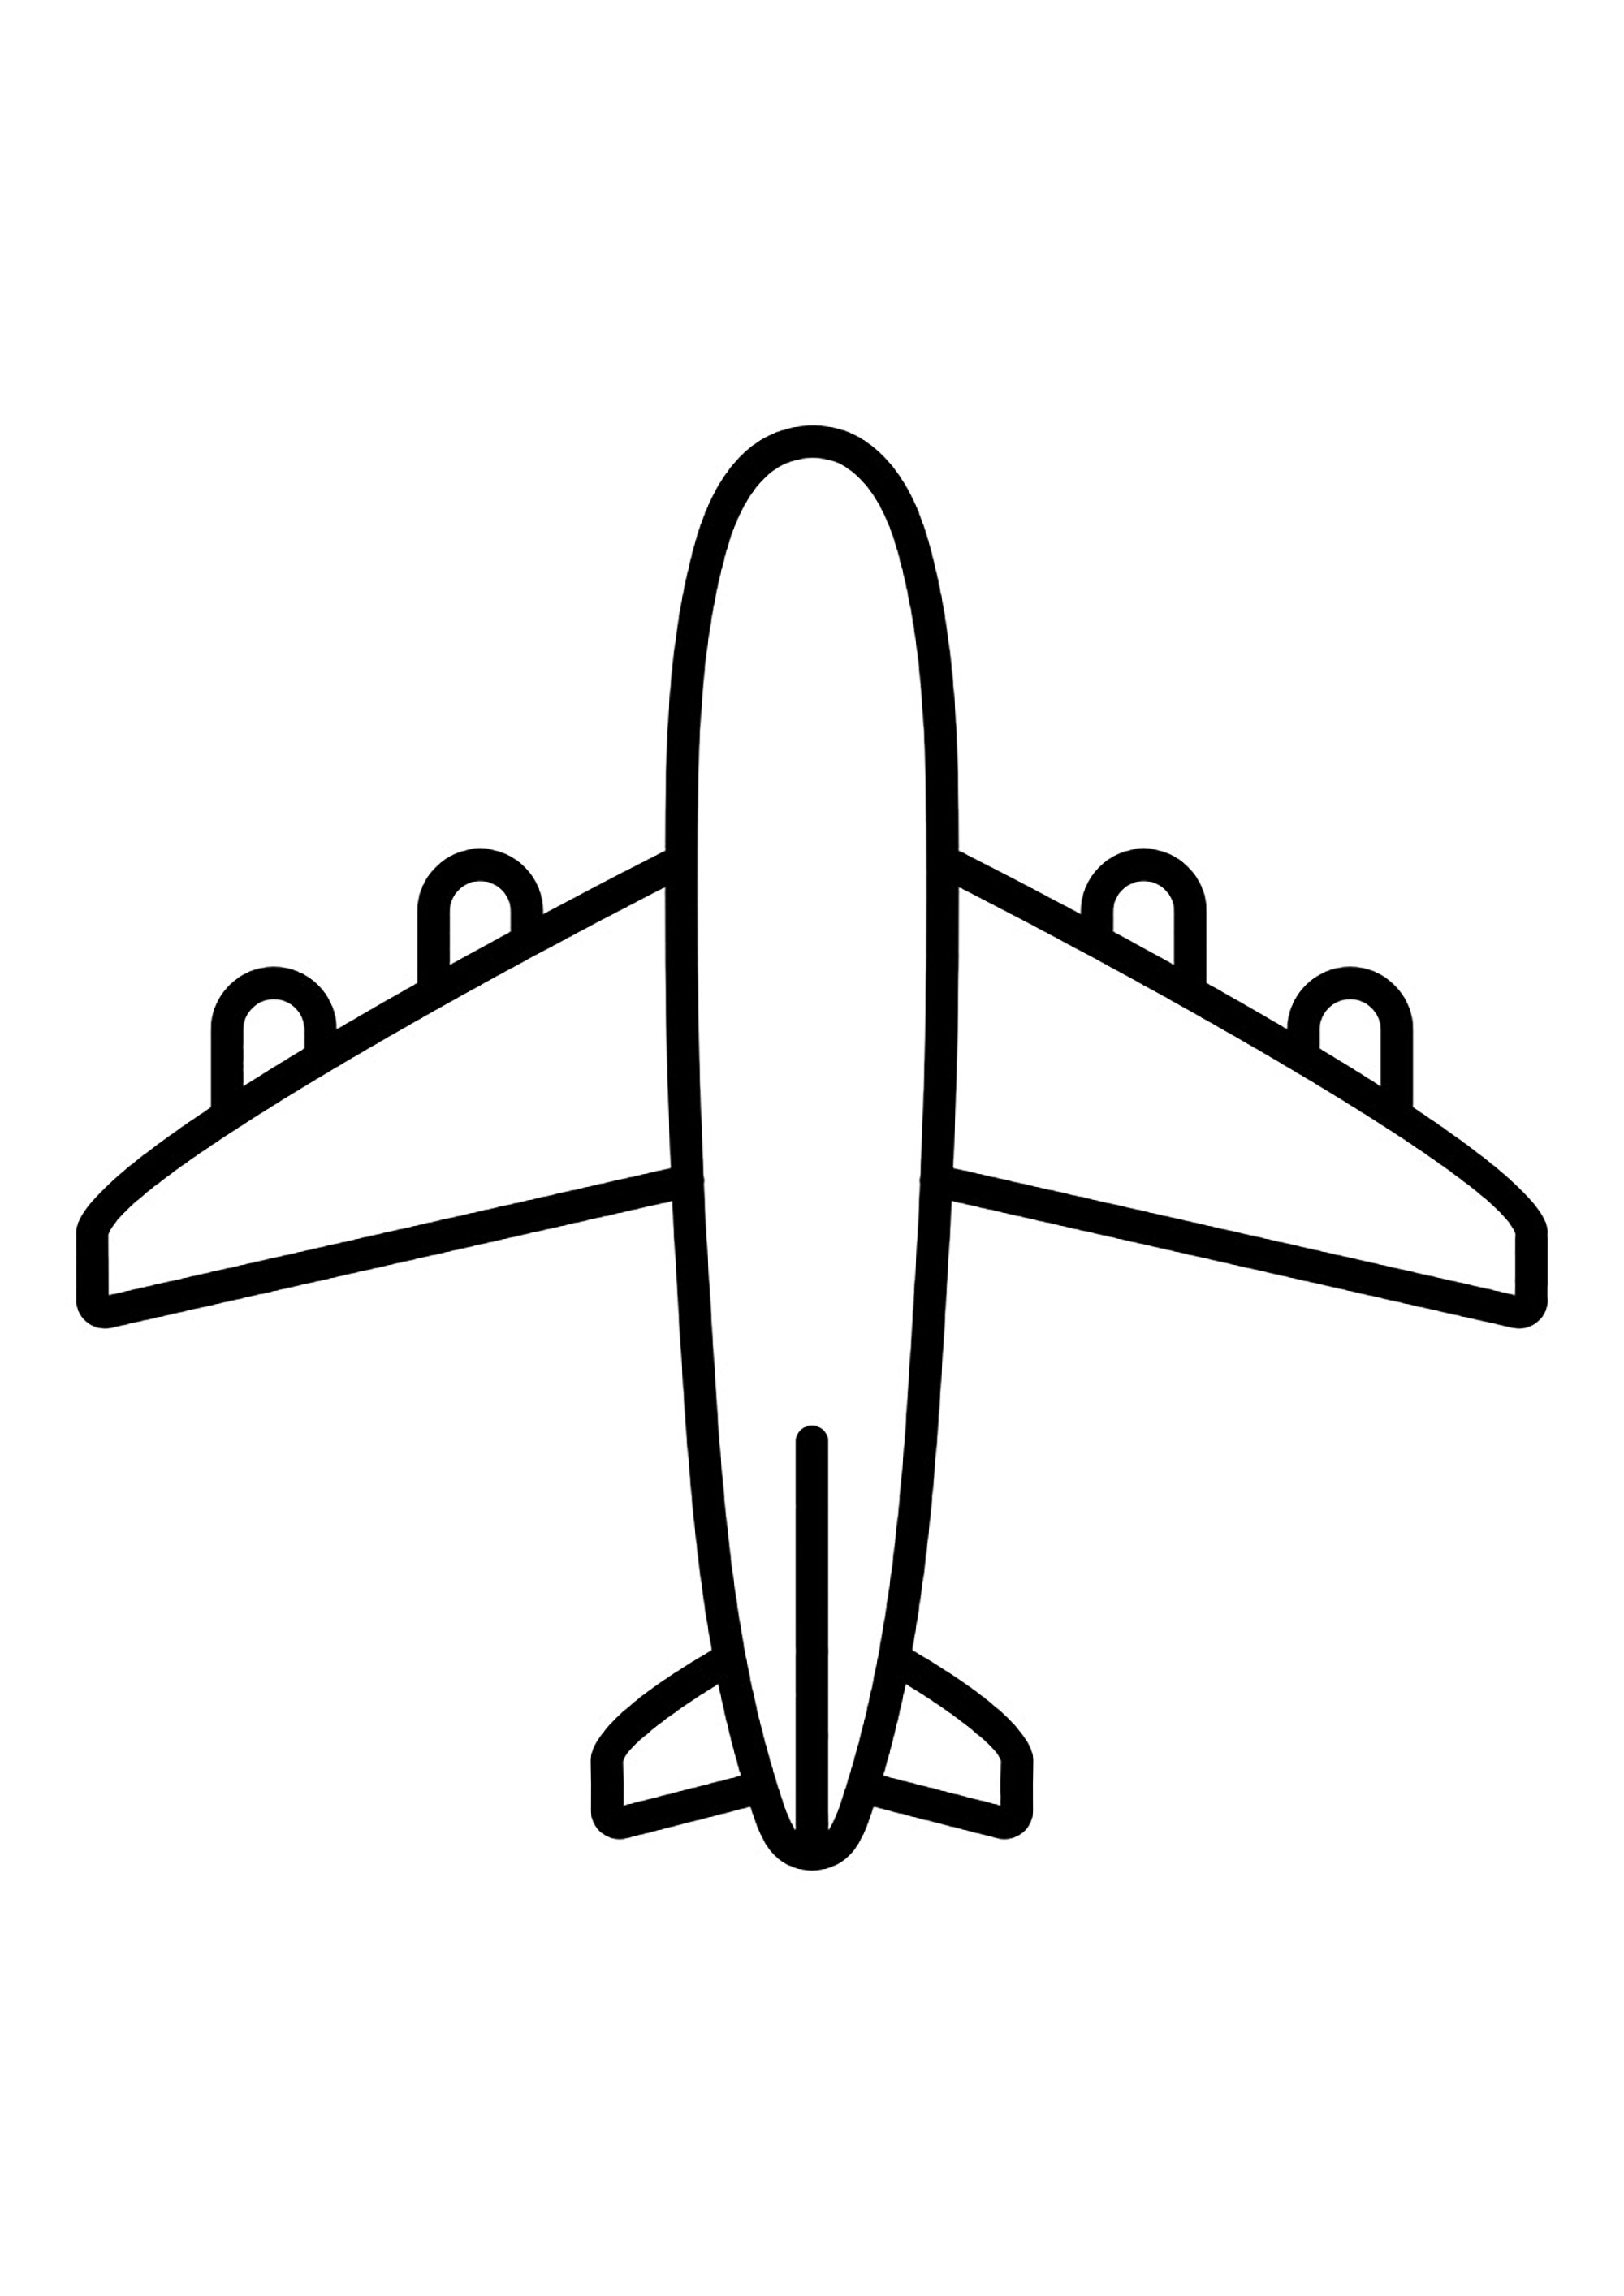 Desenho muito simples de um avião com 4 motores